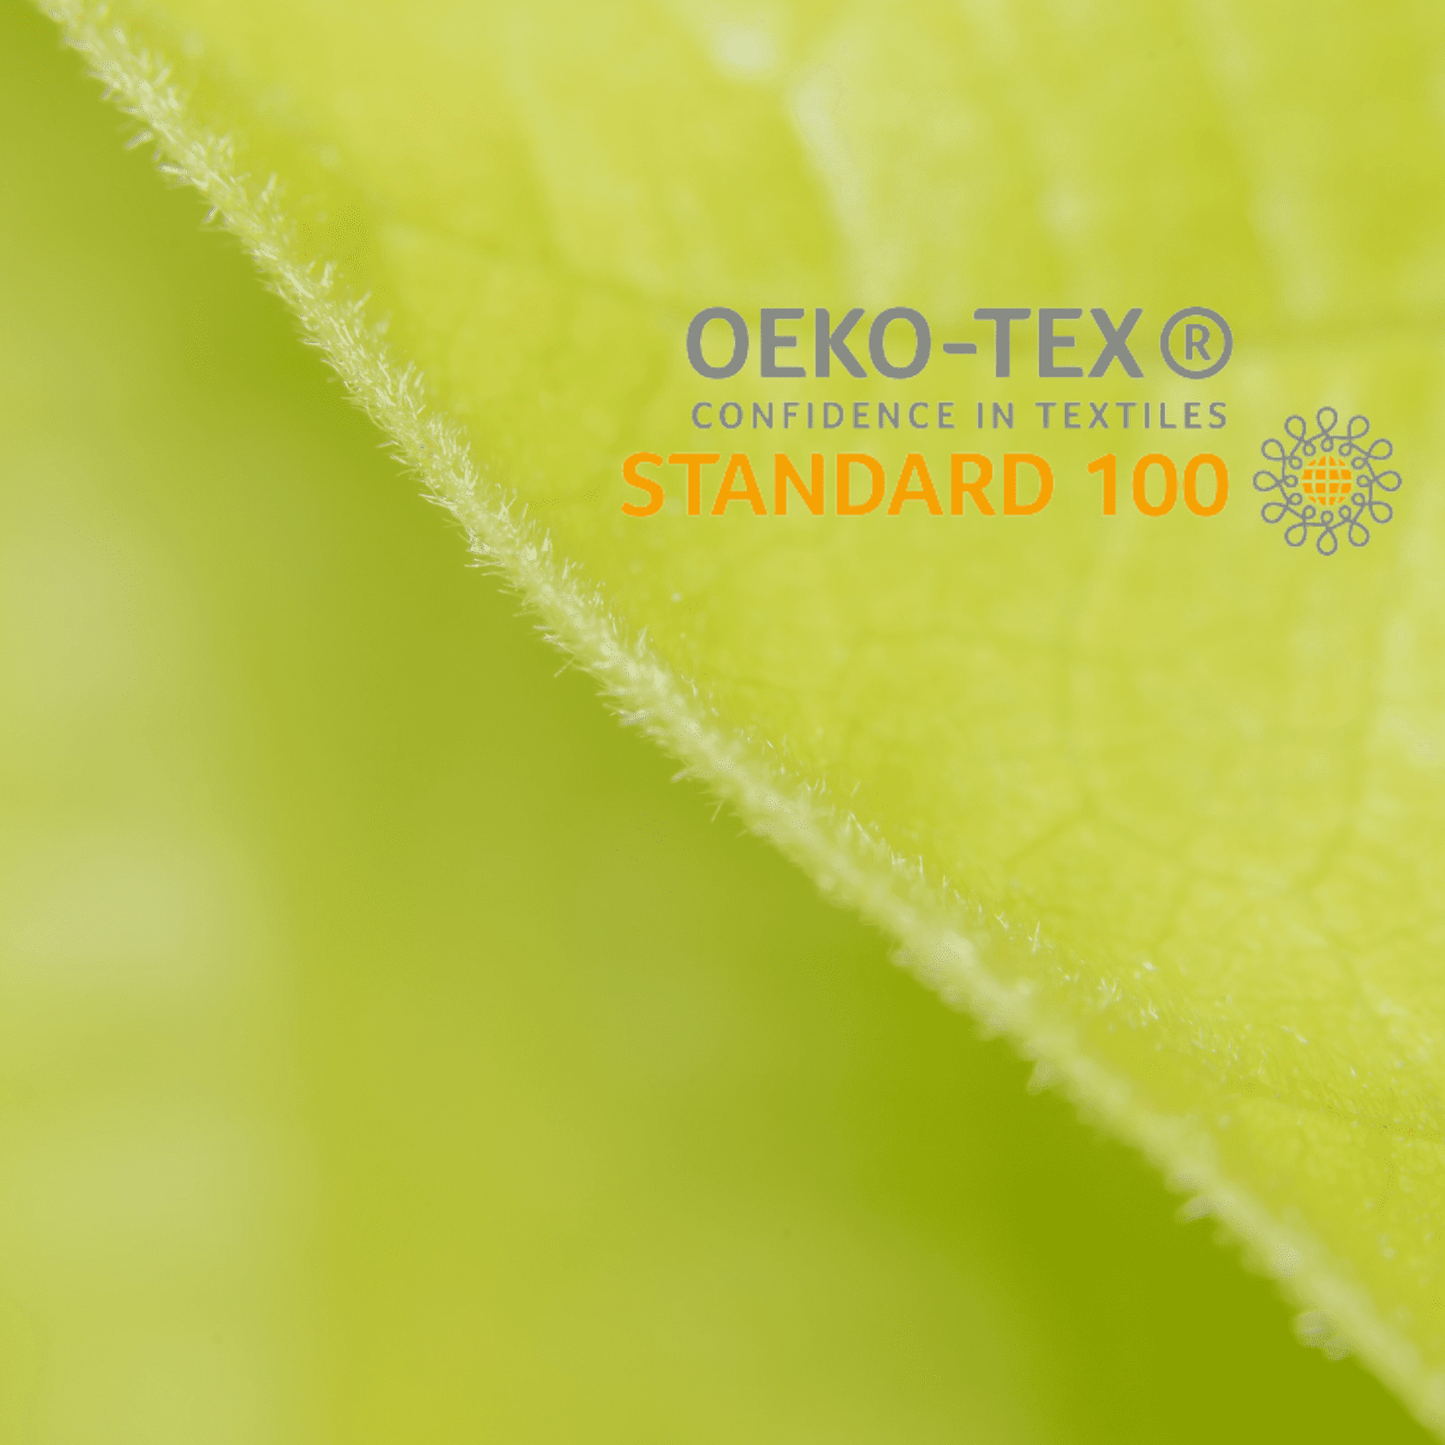 Paños esponjas de cocina ecológicos con certificación OEKOTEX Paño esponja multiuso 100% compostable sin plástico, zero waste. Paño multiuso sustentable y ecológico de GreenPost para una cocina sin plástico